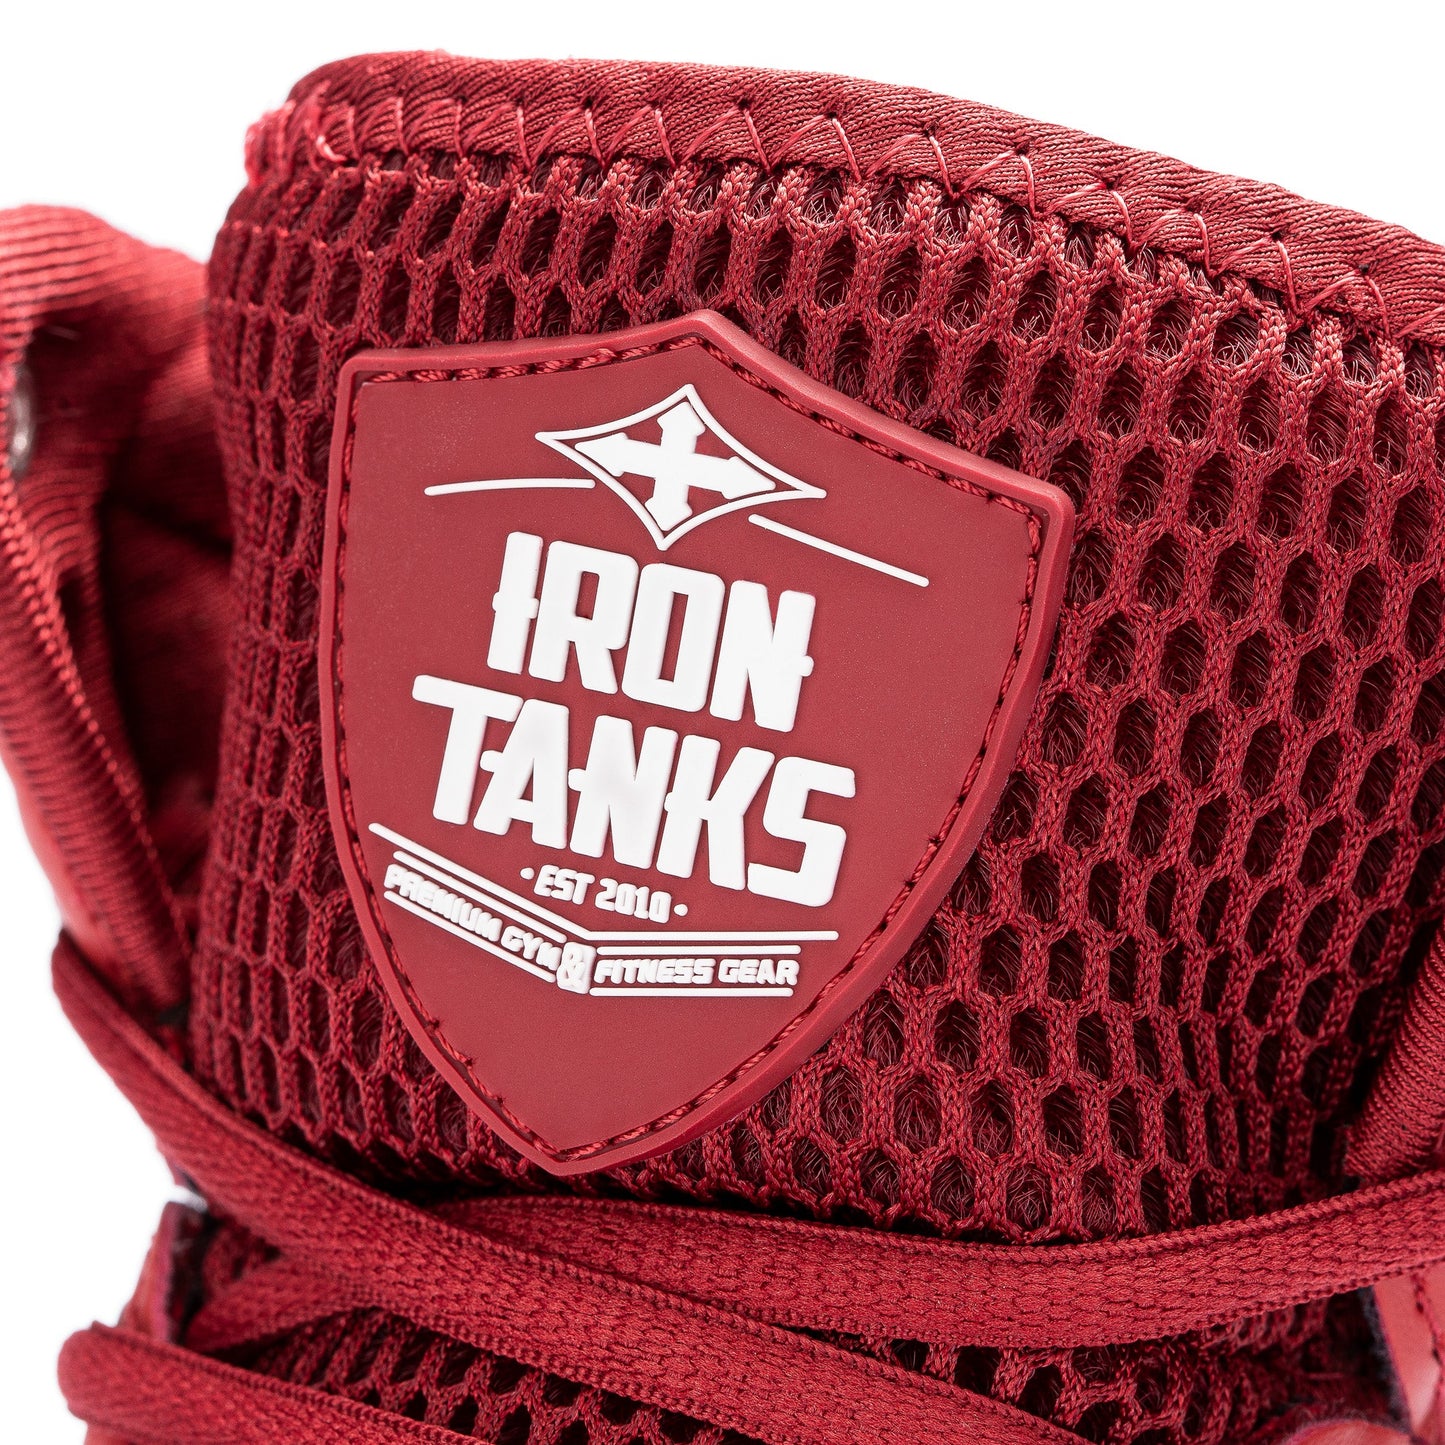 Iron Tanks Titan III Gym Shoes (Diablo Red)